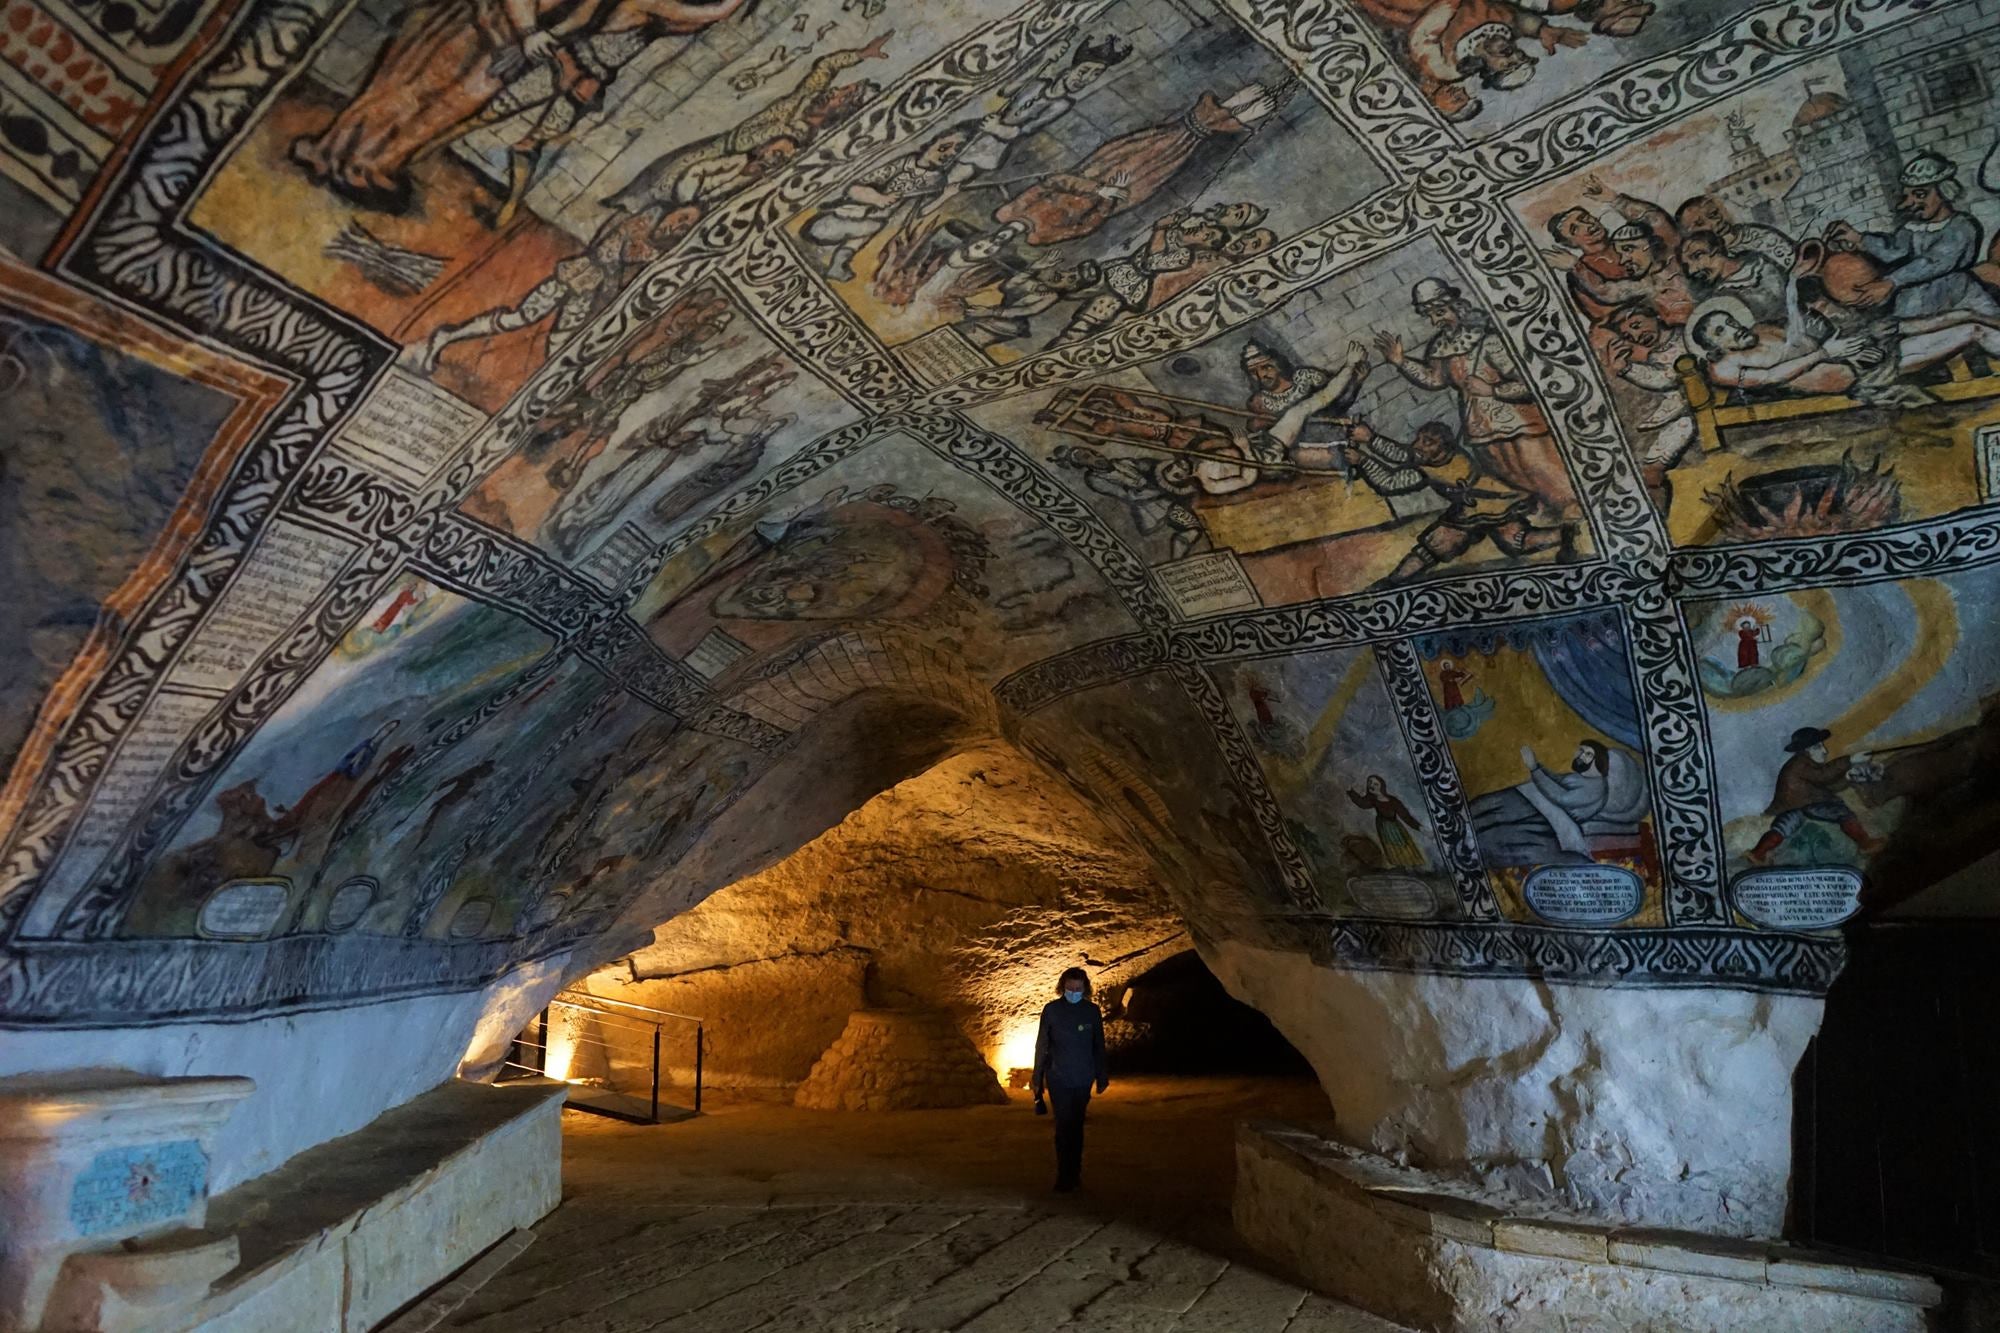 Viaje al interior de la tierra entre santos y pinturas rupestres